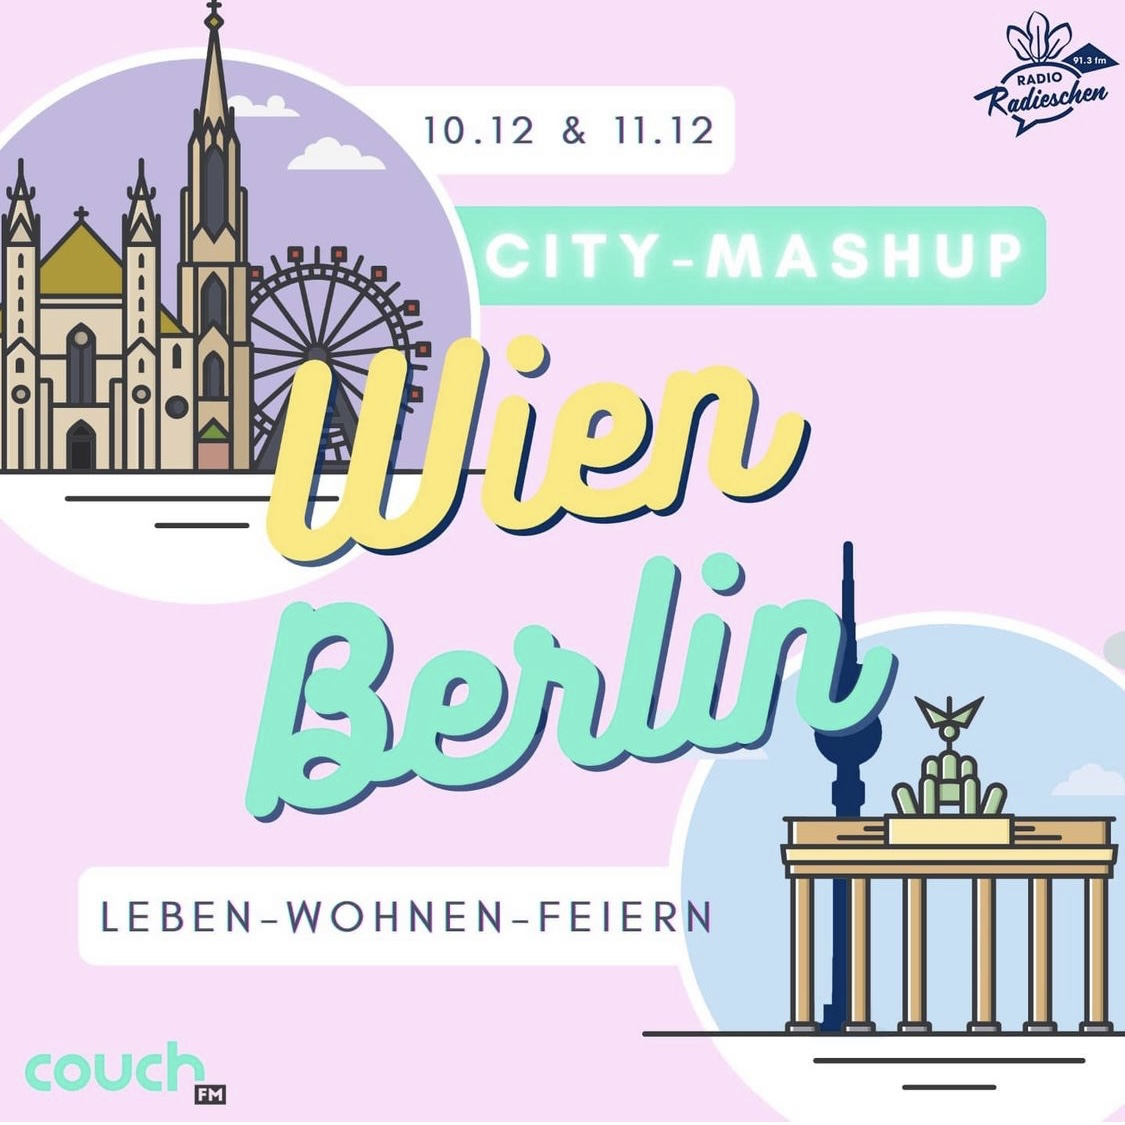 City Mashup Wien Berlin 